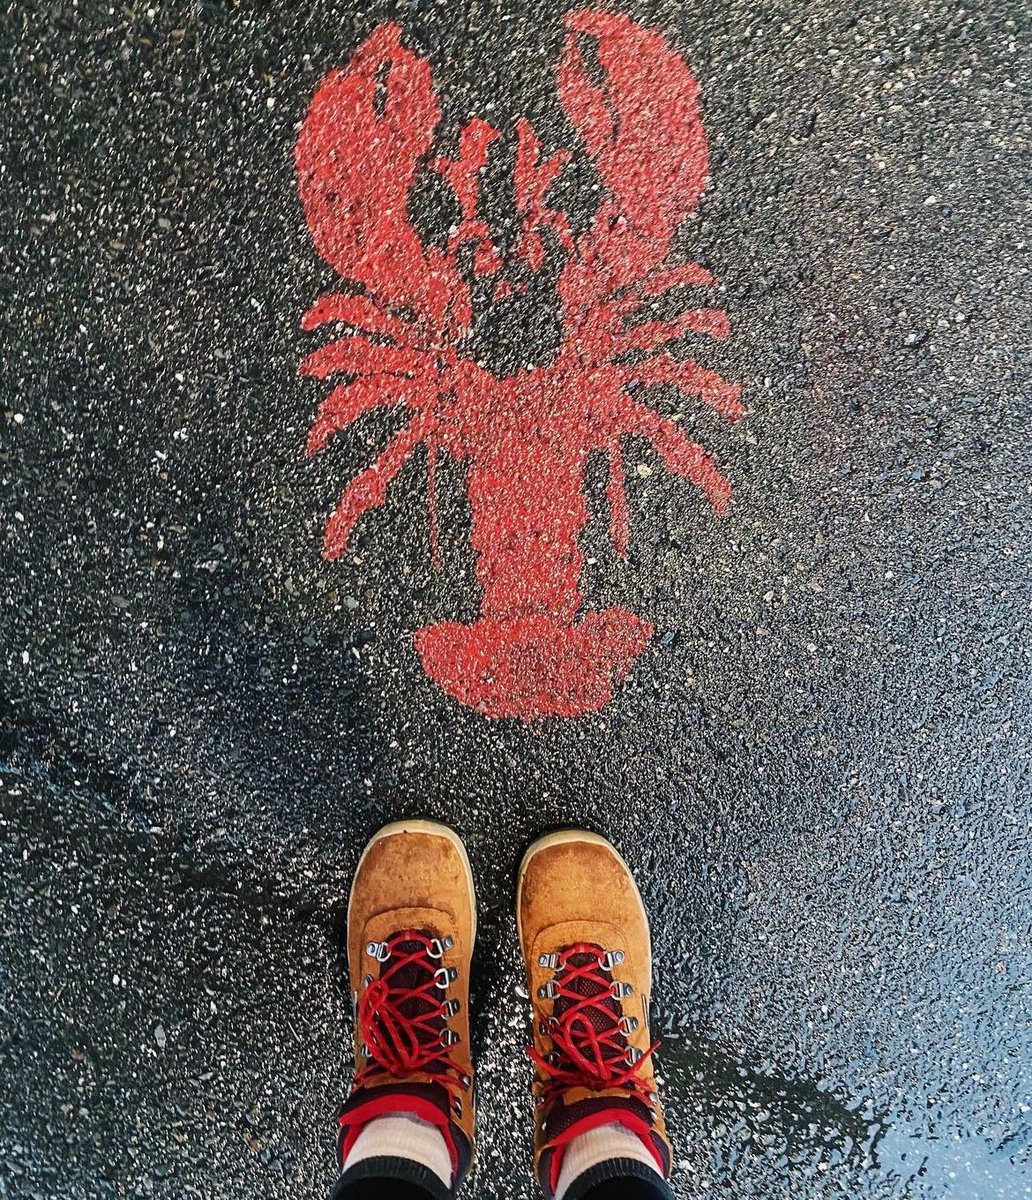 Wherever the lobster goes, we follow. 🦞 #VisitBarHarbor 📸 via Instagram: weavethroughtheworld 📍: Bar Harbor, Maine